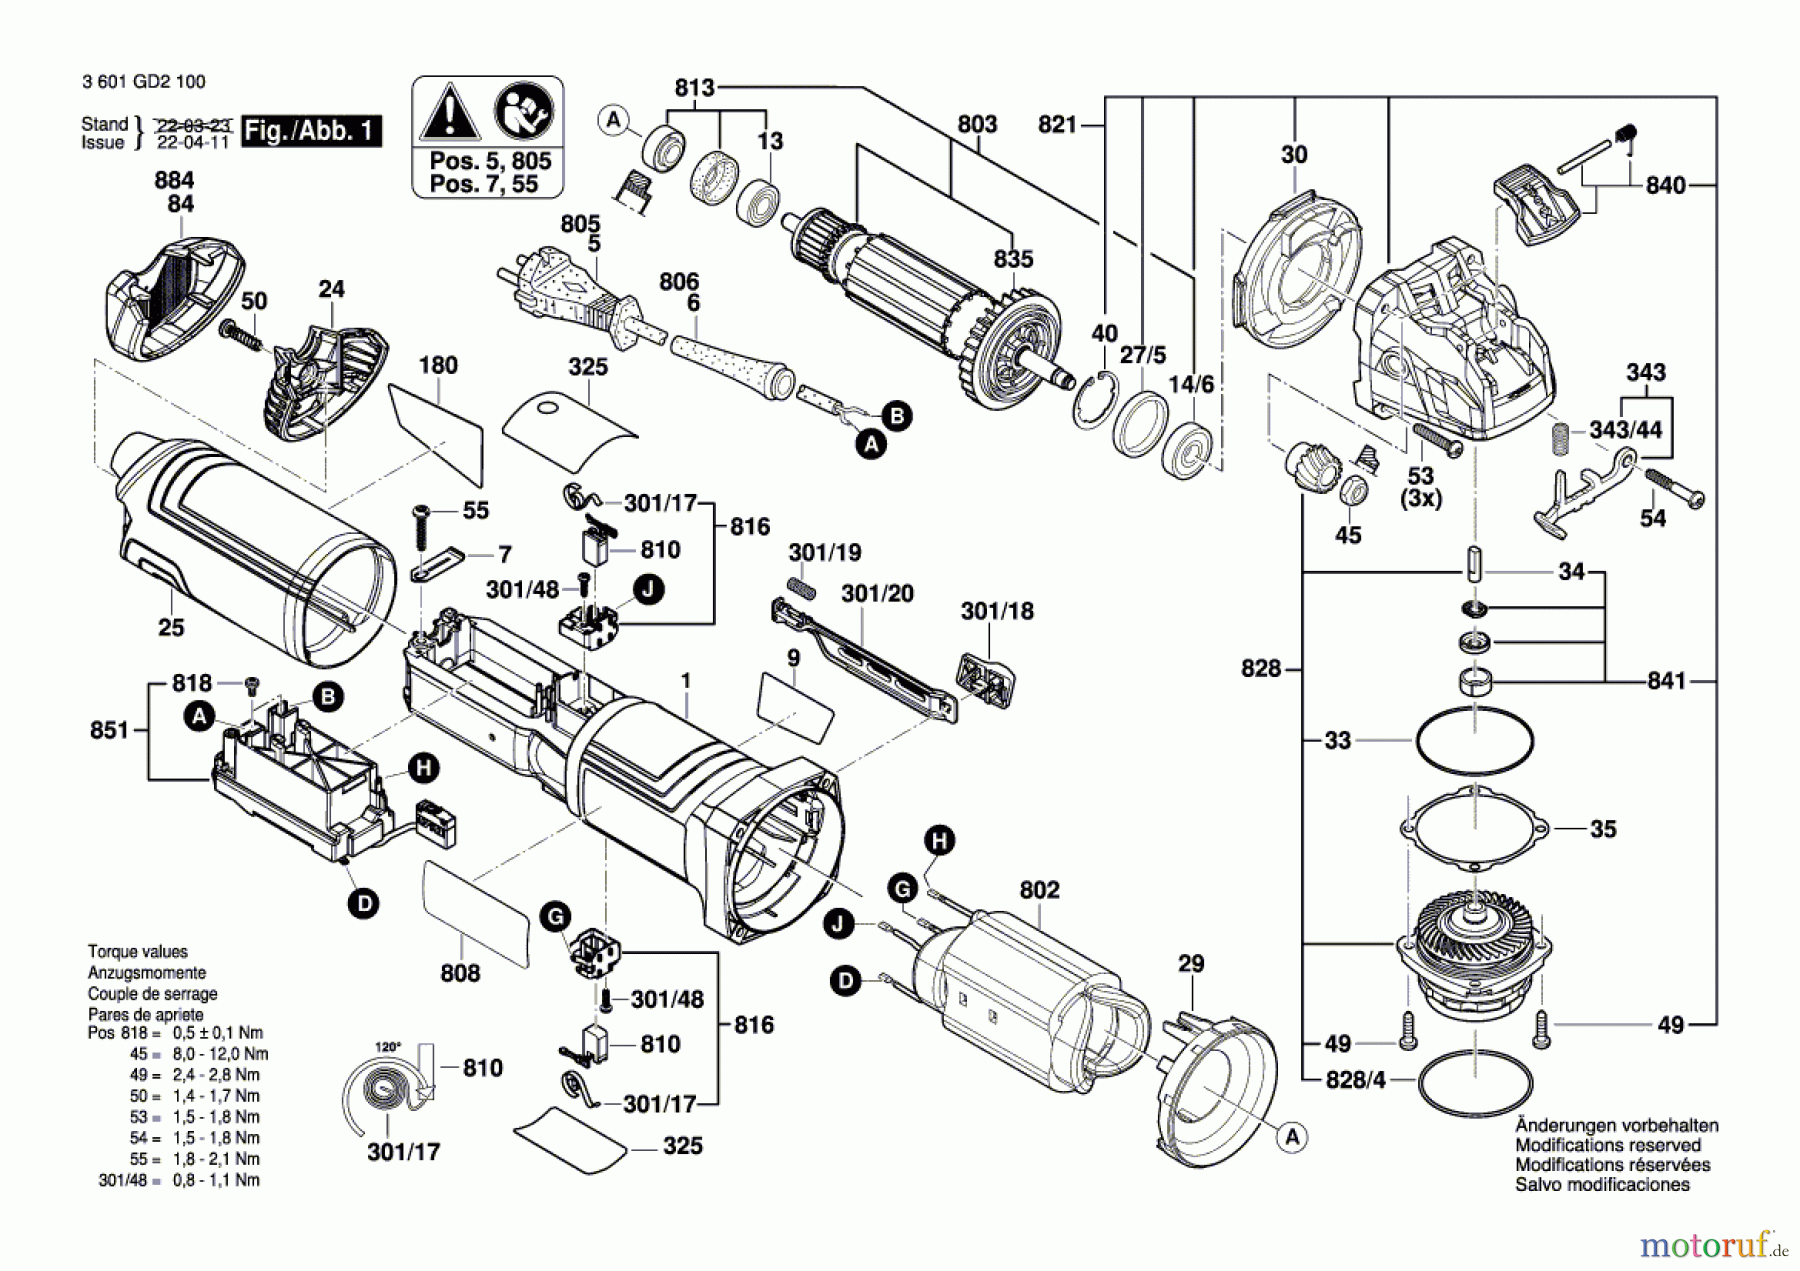  Bosch Werkzeug Winkelschleifer GWX 14-125 S Seite 1